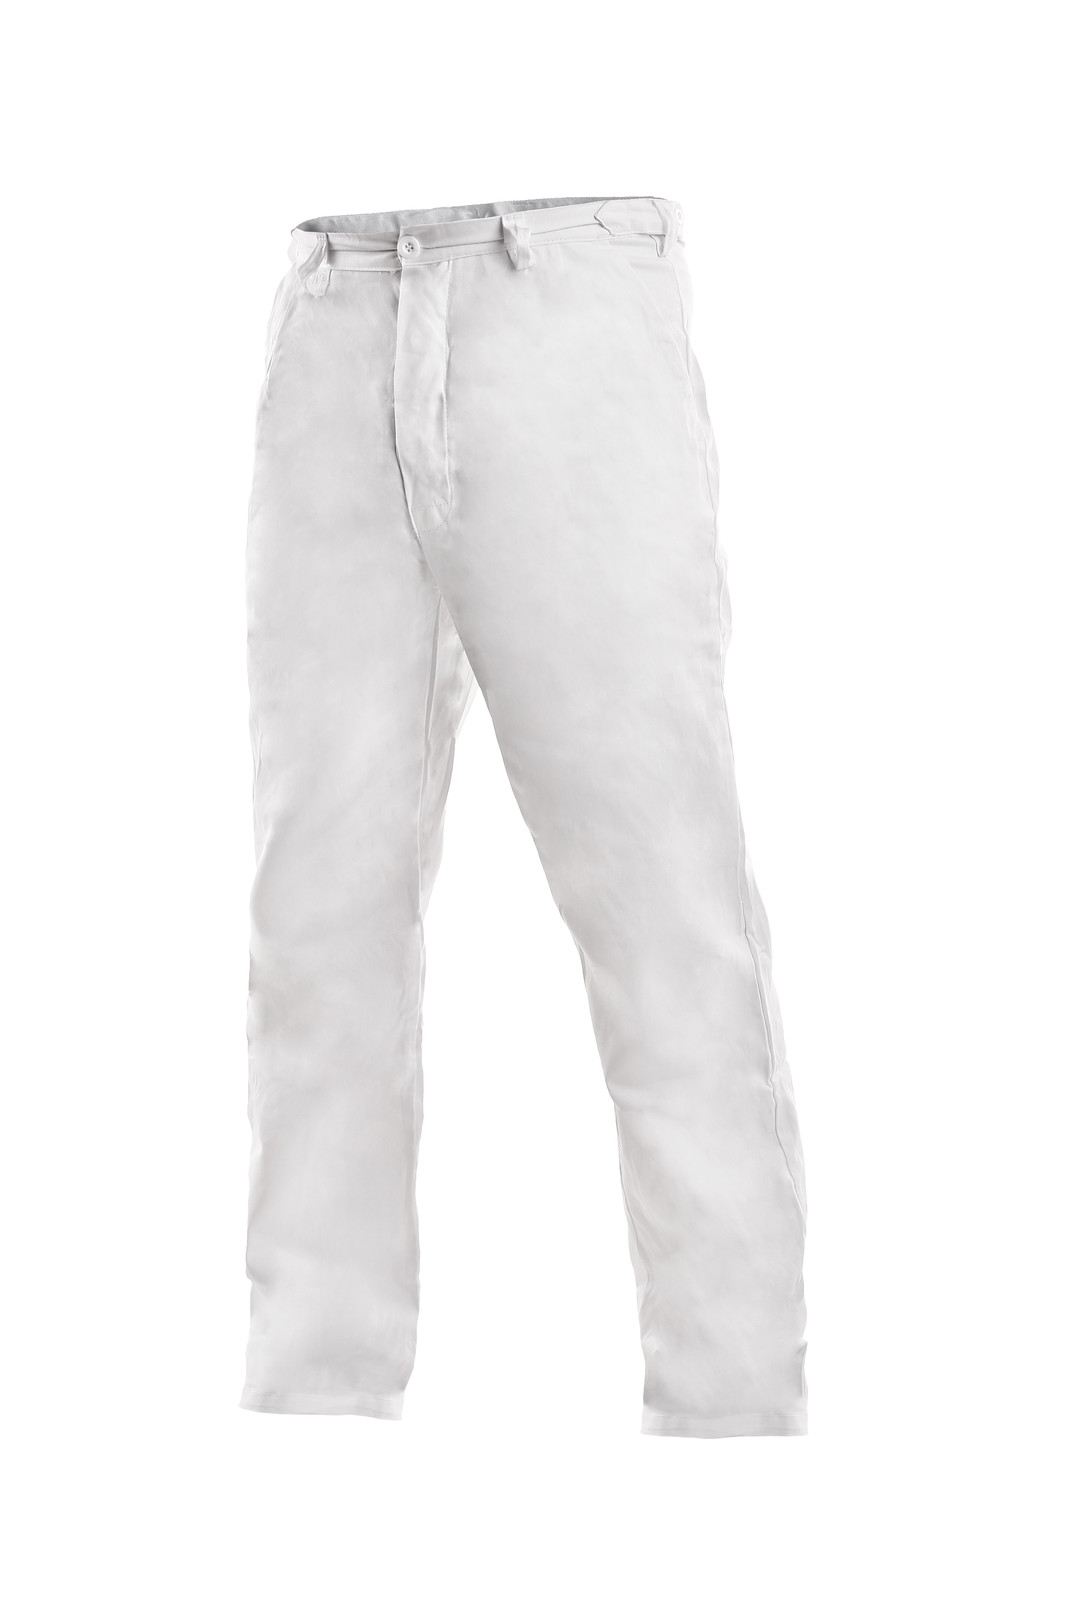 Pánske biele bavlnené nohavice Artur - veľkosť: 54, farba: biela